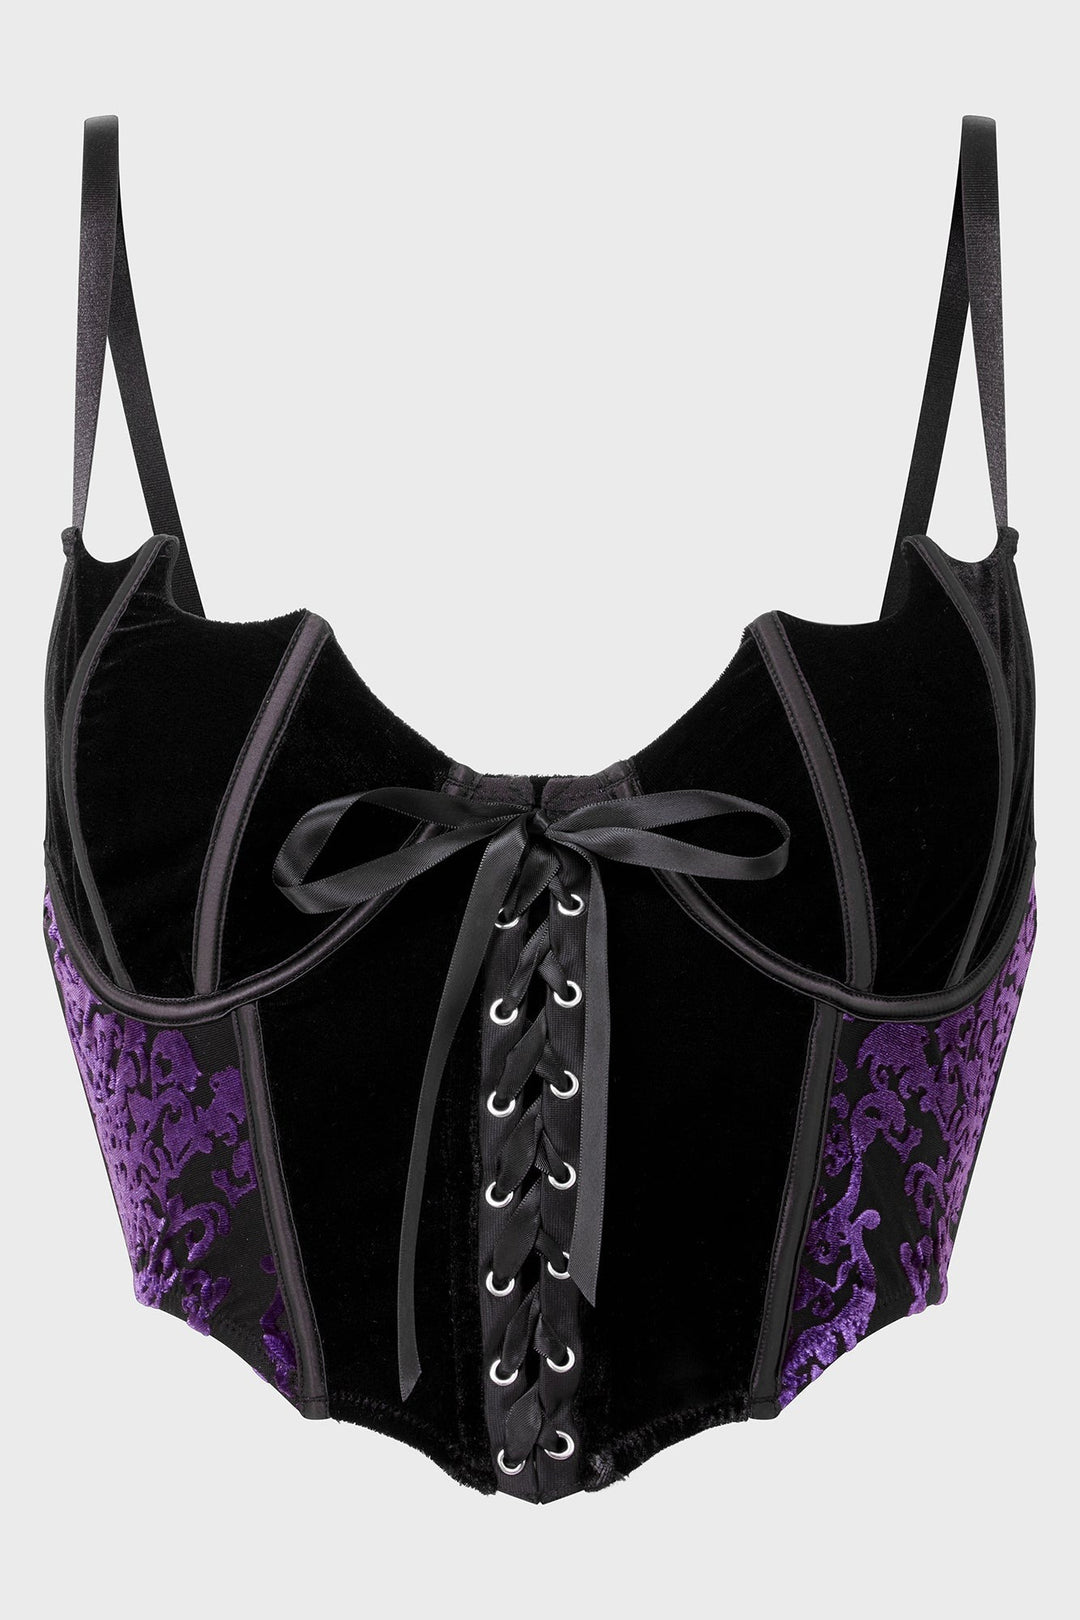 velvet batwing corset top